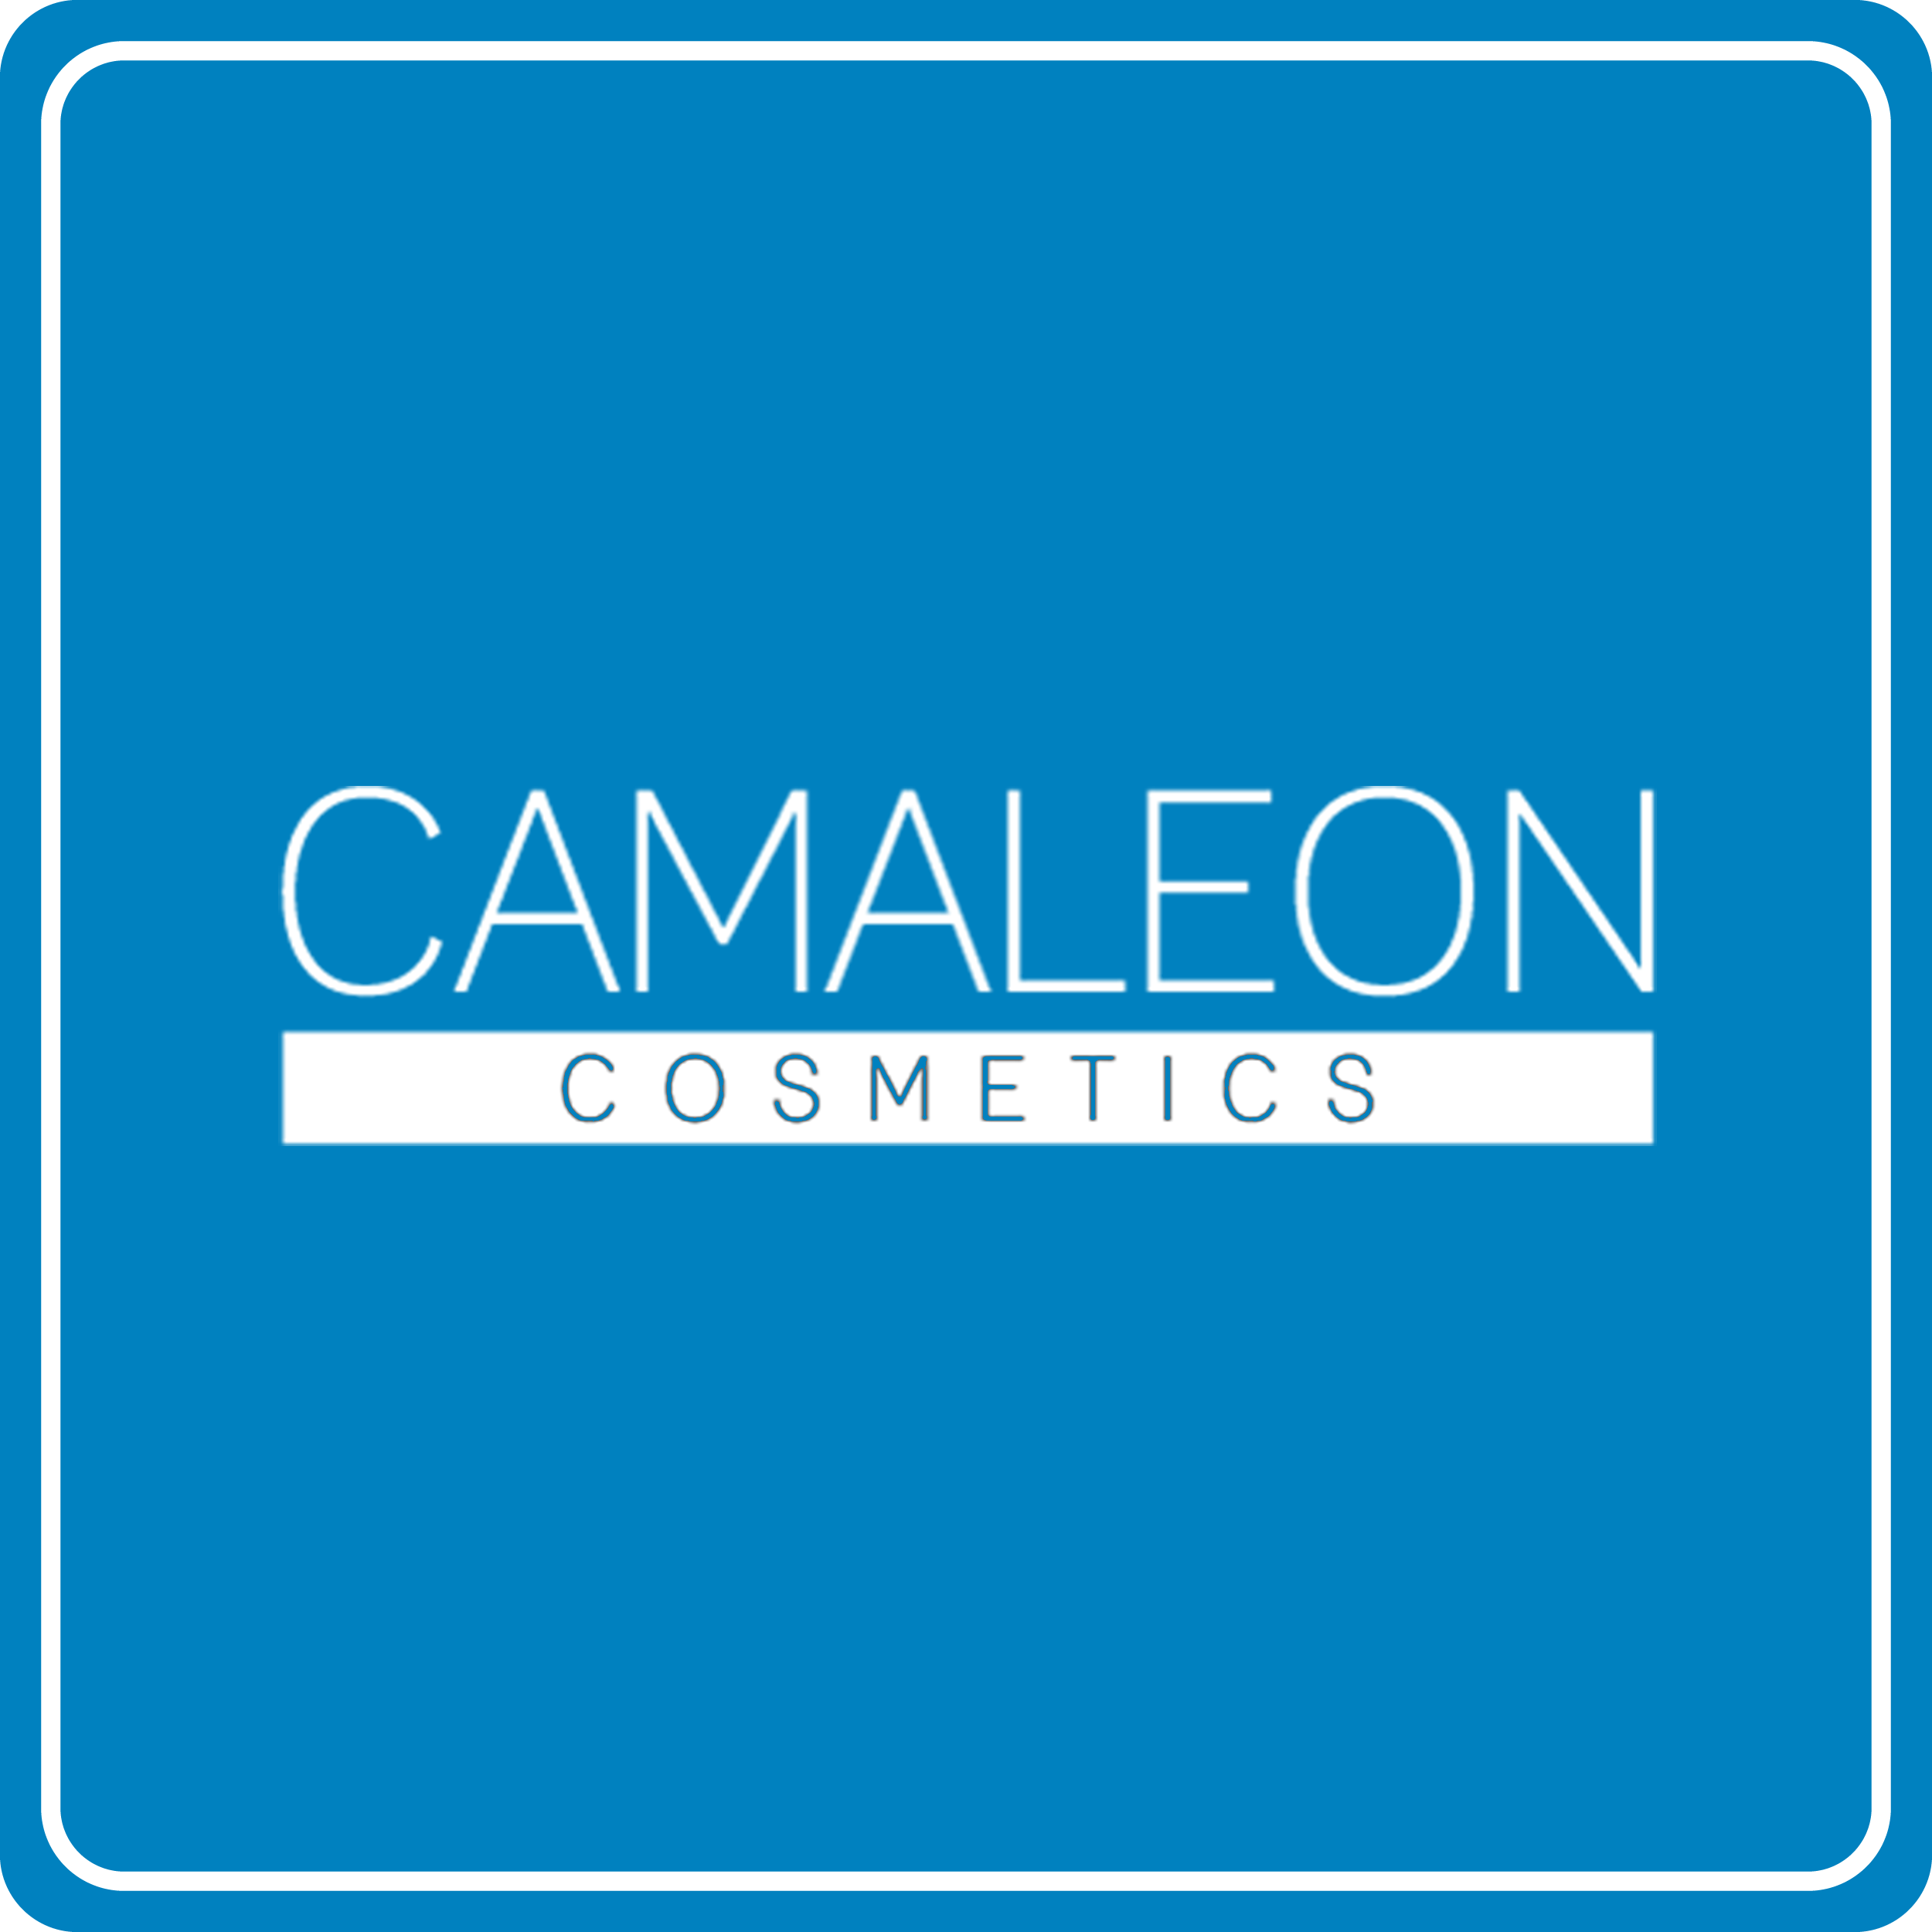 CAMALEON COSMETICS